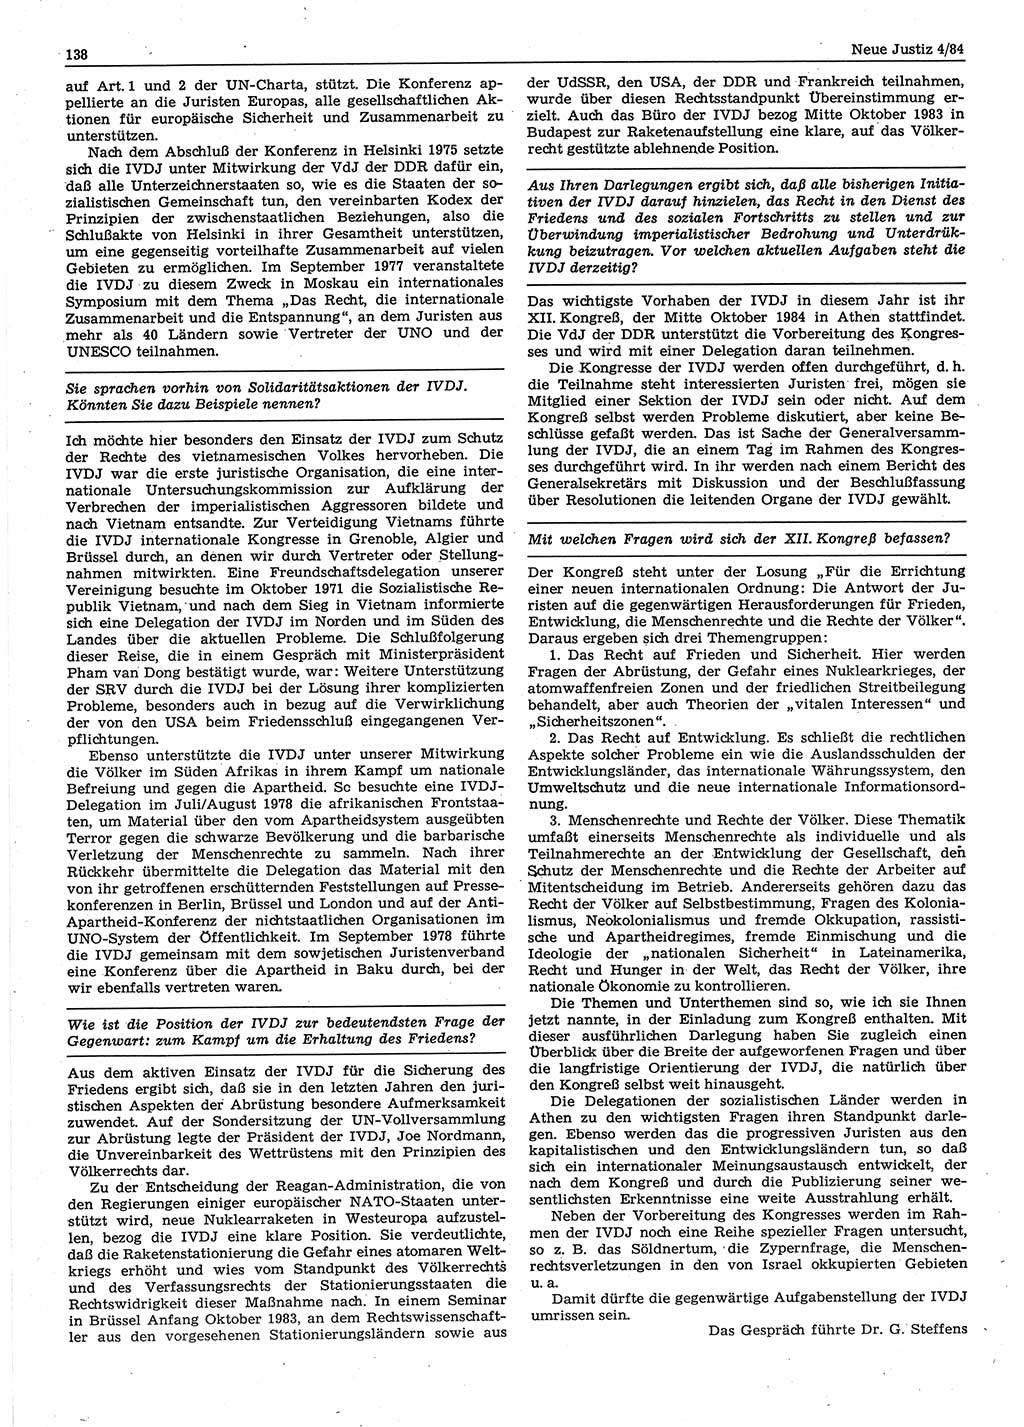 Neue Justiz (NJ), Zeitschrift für sozialistisches Recht und Gesetzlichkeit [Deutsche Demokratische Republik (DDR)], 38. Jahrgang 1984, Seite 138 (NJ DDR 1984, S. 138)